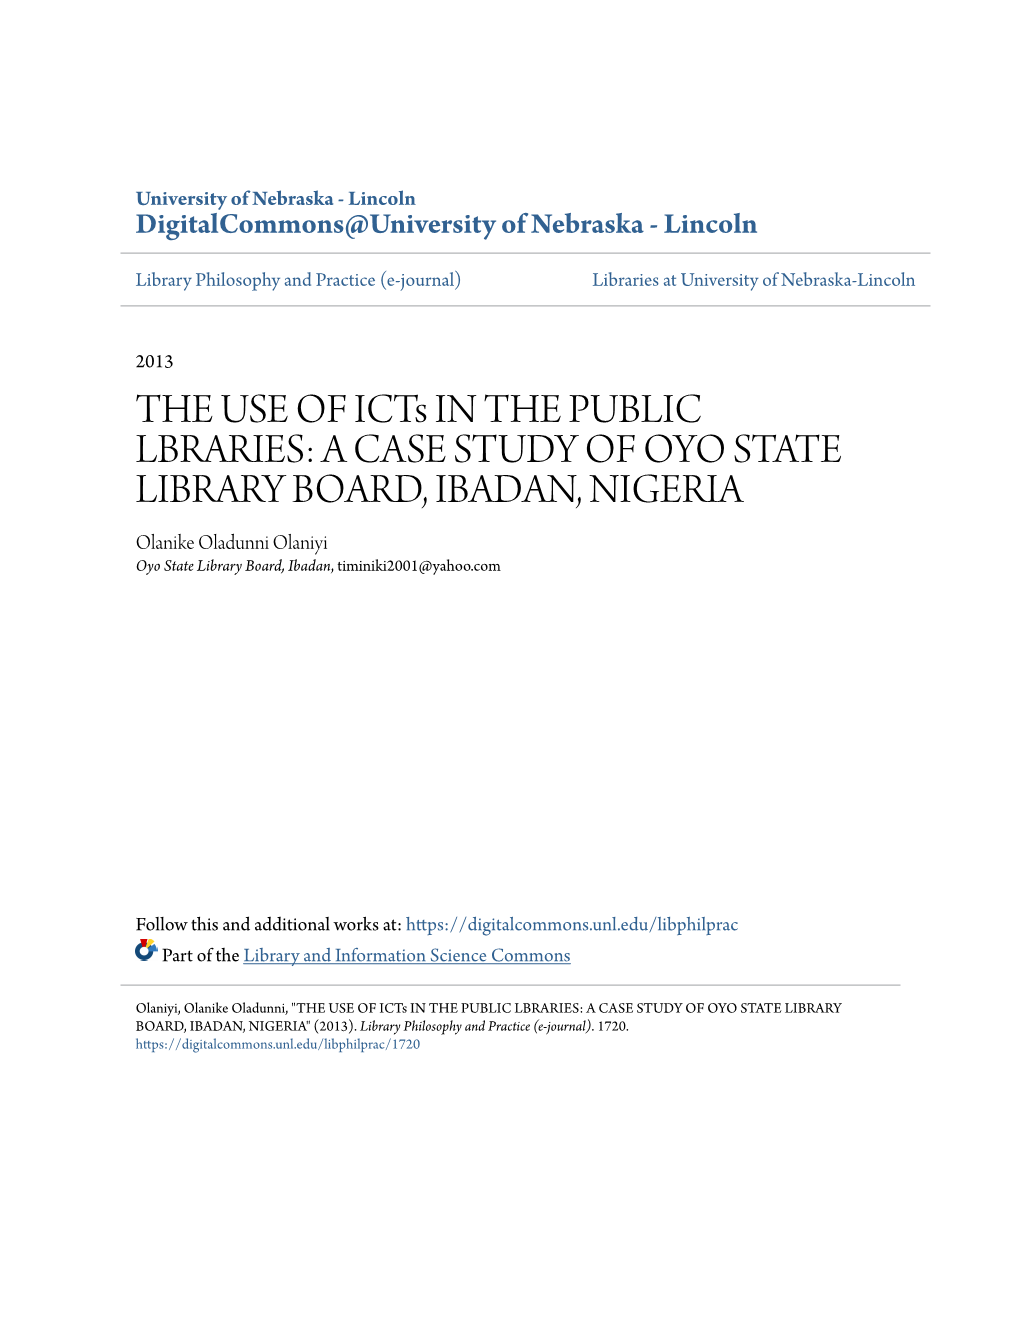 A CASE STUDY of OYO STATE LIBRARY BOARD, IBADAN, NIGERIA Olanike Oladunni Olaniyi Oyo State Library Board, Ibadan, Timiniki2001@Yahoo.Com